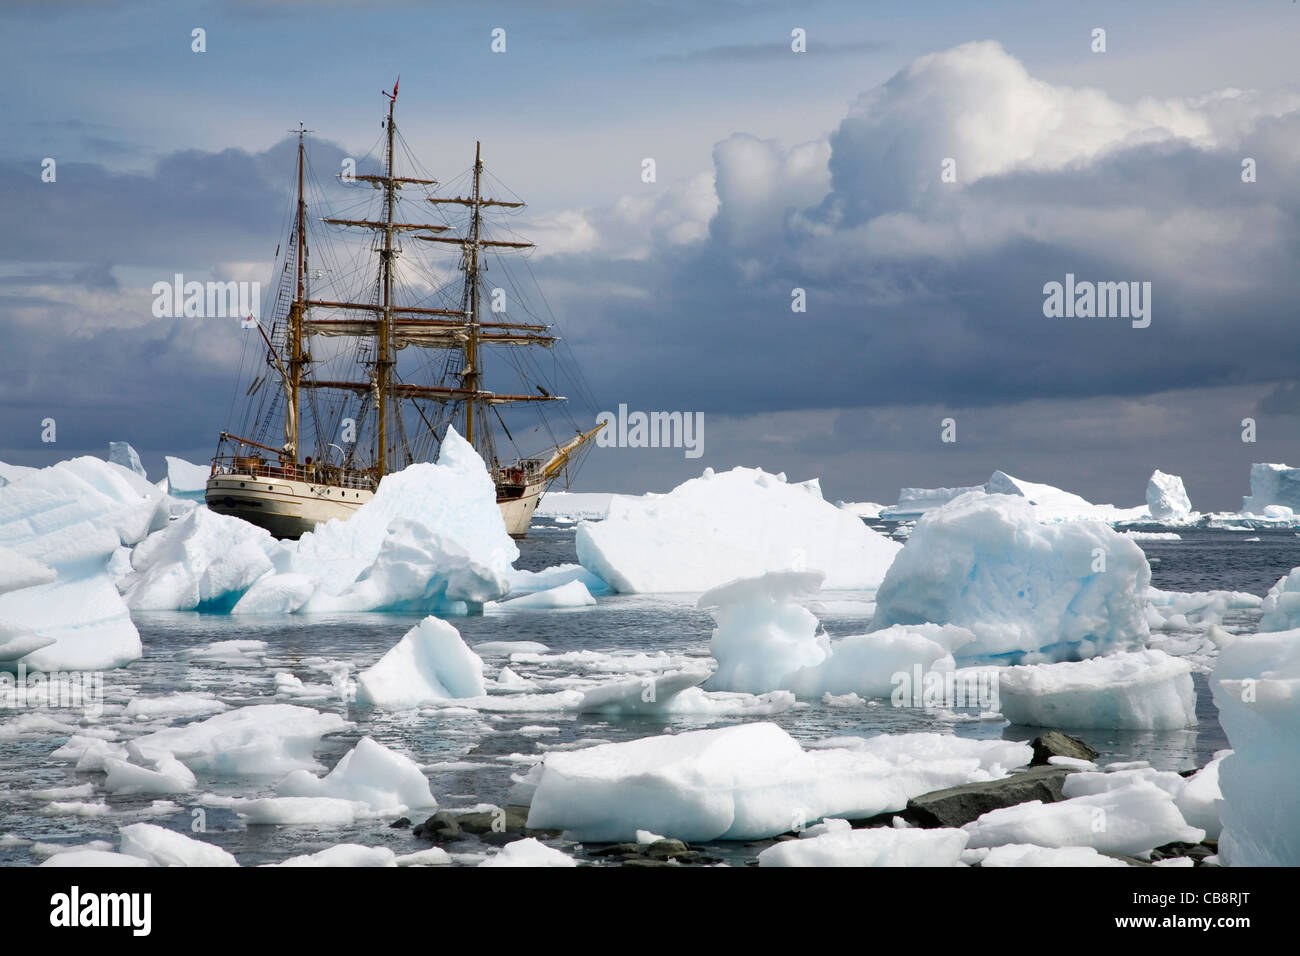 Eisberge und das Segeln Schiff Europa, ein Dreimaster Viermastbark, am Hafen Charcot, Wilhelm Archipel, Antarktis Stockfoto